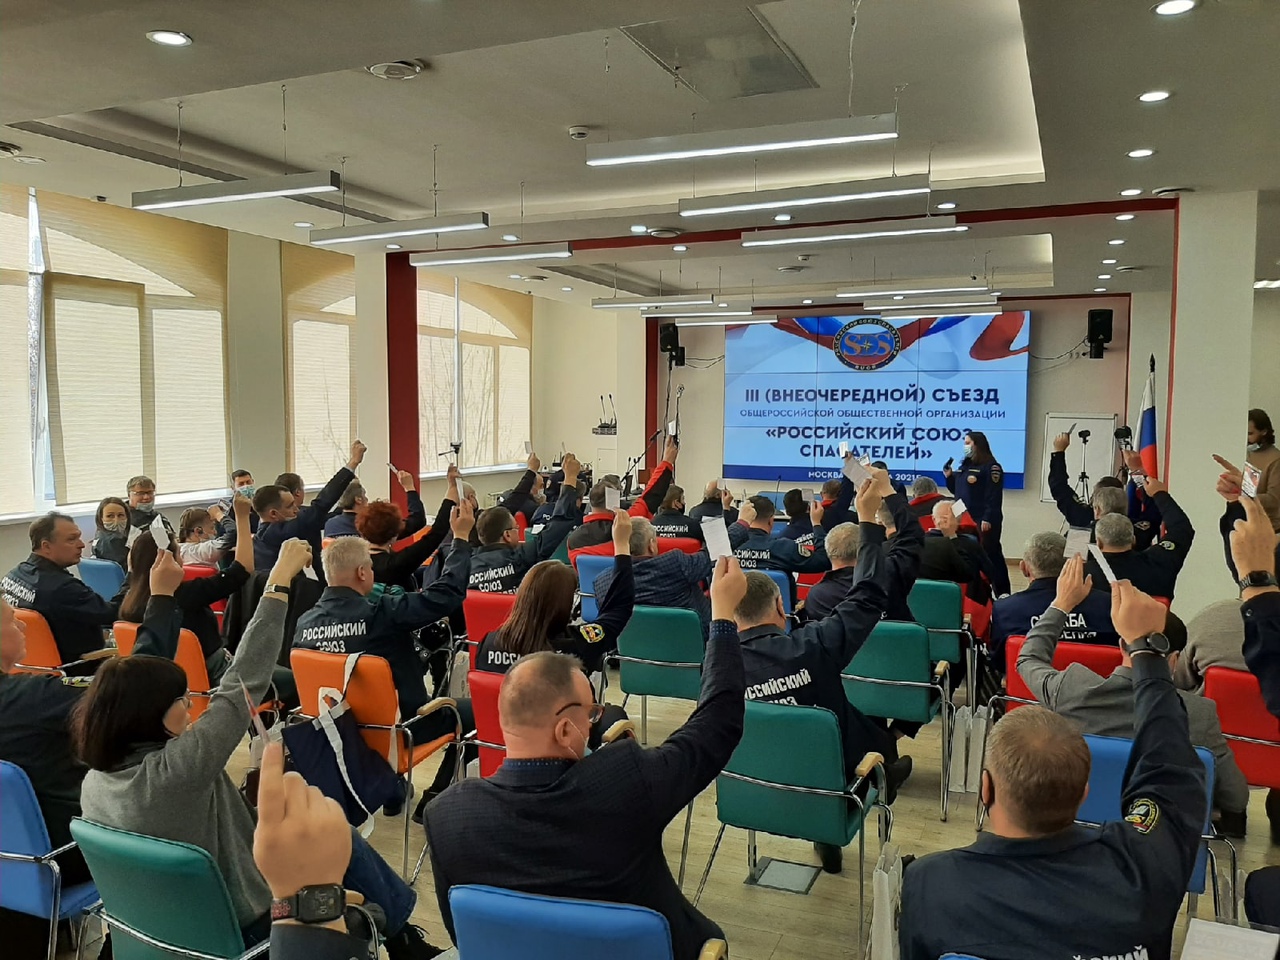 Открытие III внеочередного съезда Общероссийской общественной организации "Российский союз спасателей"